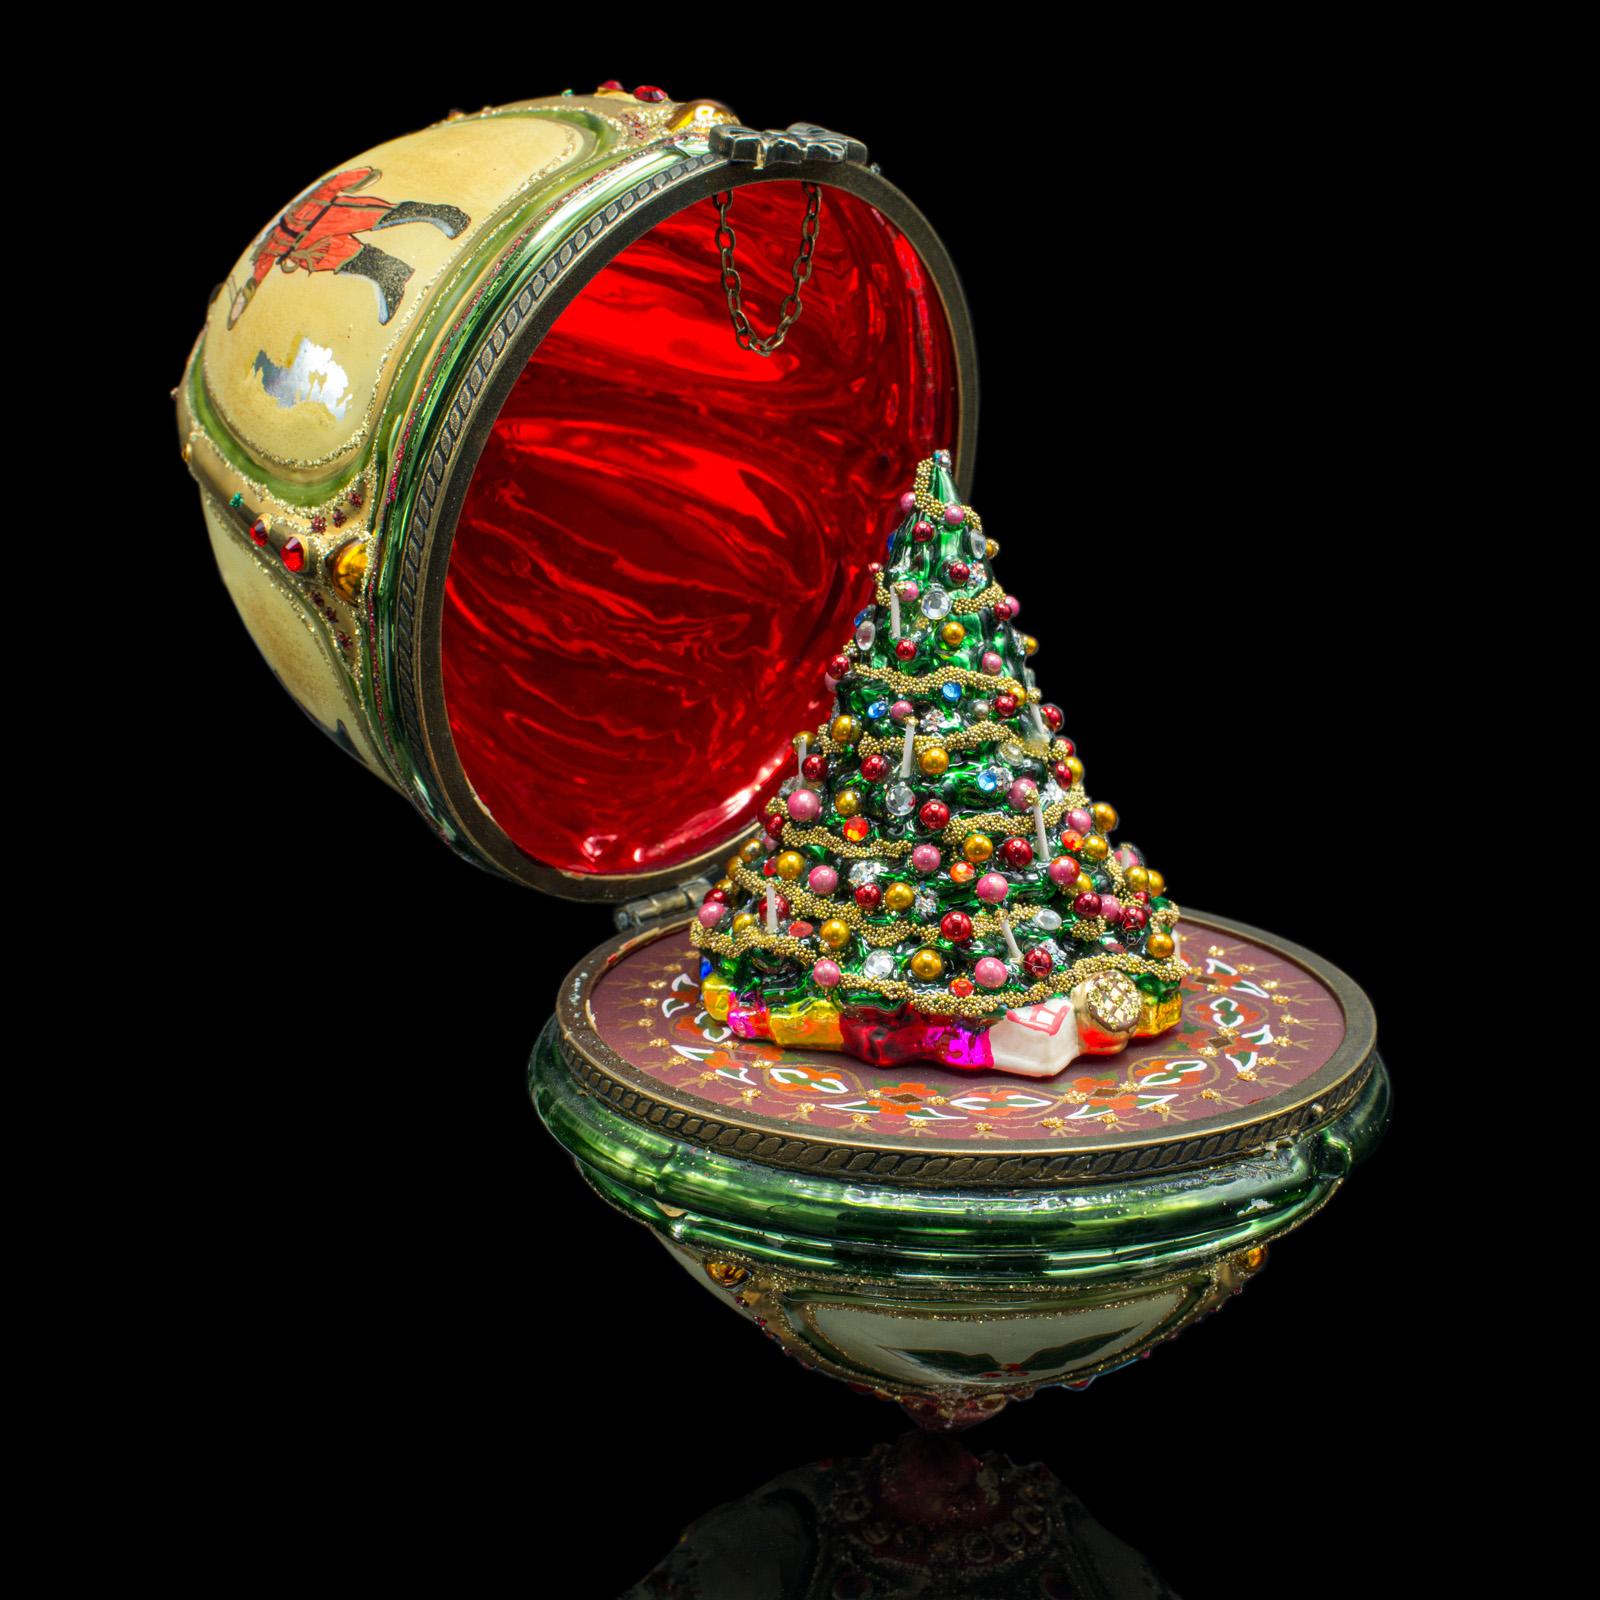 Voici une boule de Noël vintage en forme d'œuf. Un ornement de sapin décoratif CIRCA, datant de la fin du 20e siècle, vers 1970.

Ajoutez une touche de Noël passé à votre sapin avec cette fabuleuse décoration.
Présente une patine d'ancienneté